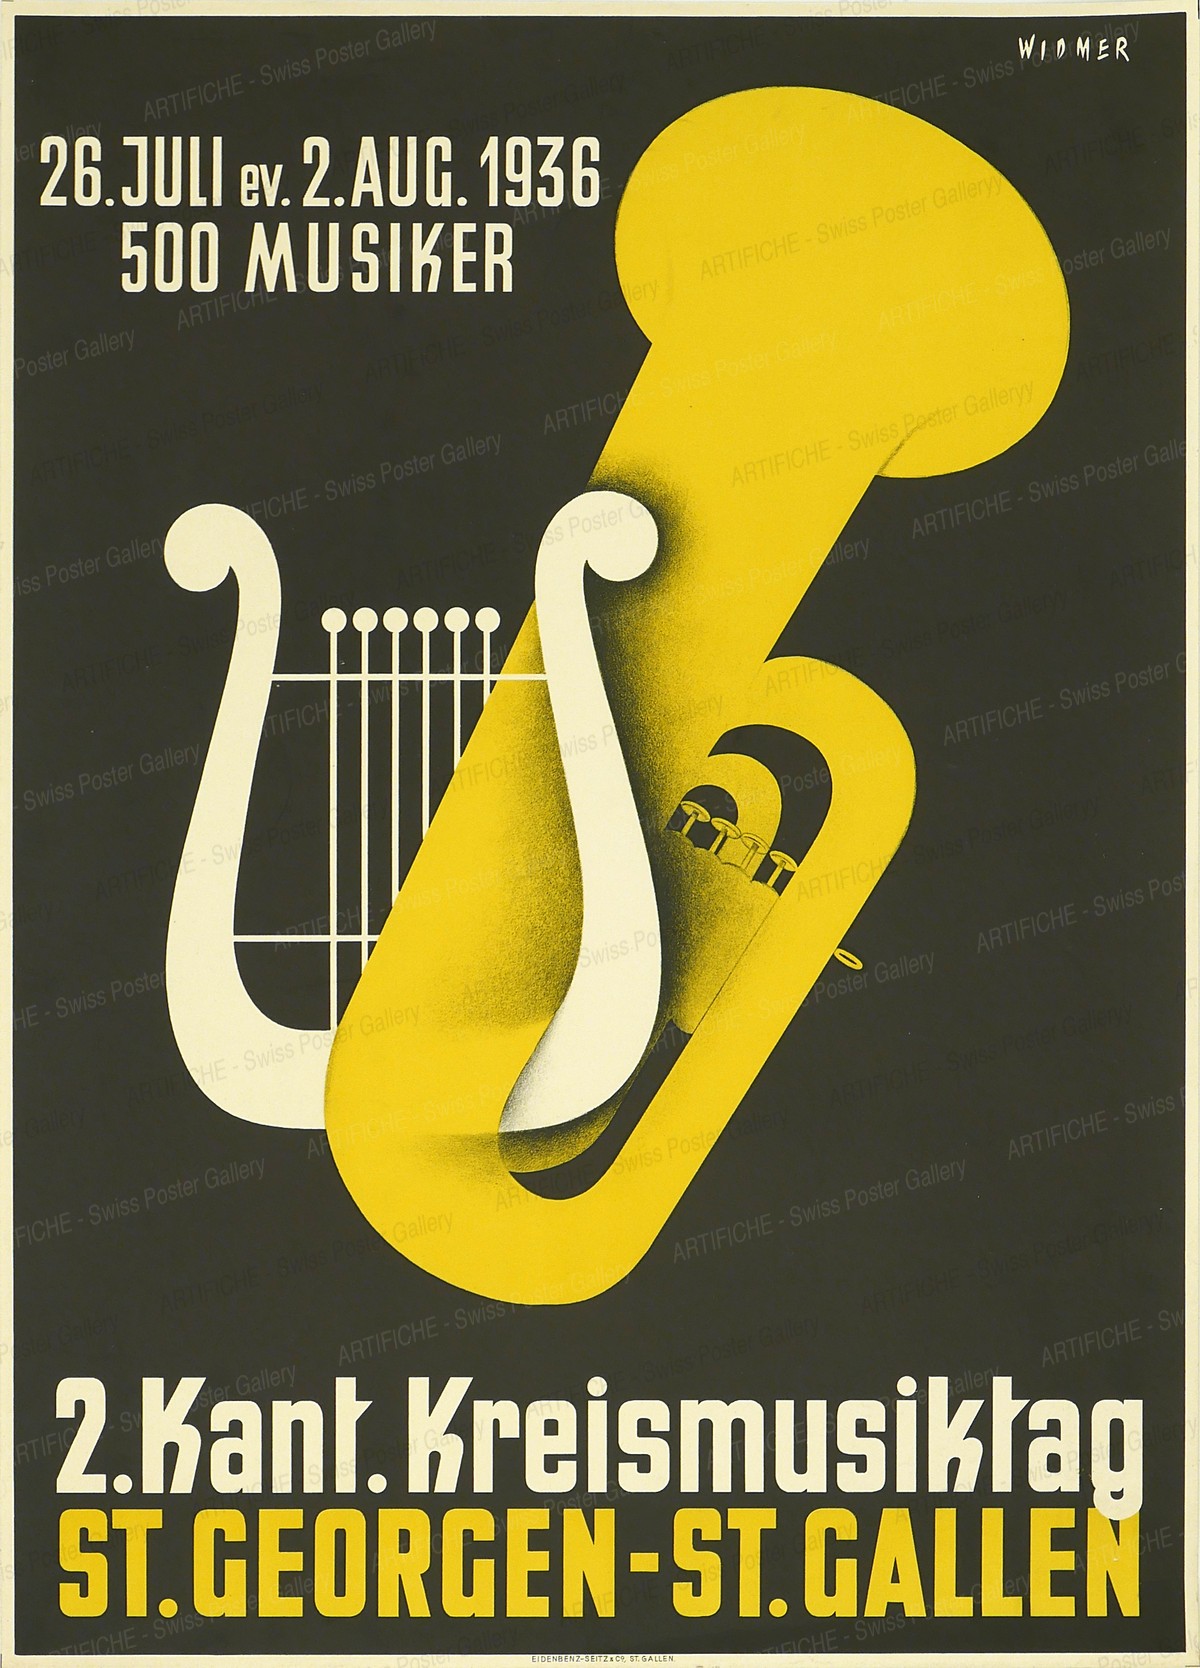 2. Kant. Kreismusiktag St. Georgen – St. Gallen – 26. Juli ev. 2. Aug. 1936 – 500 Musiker